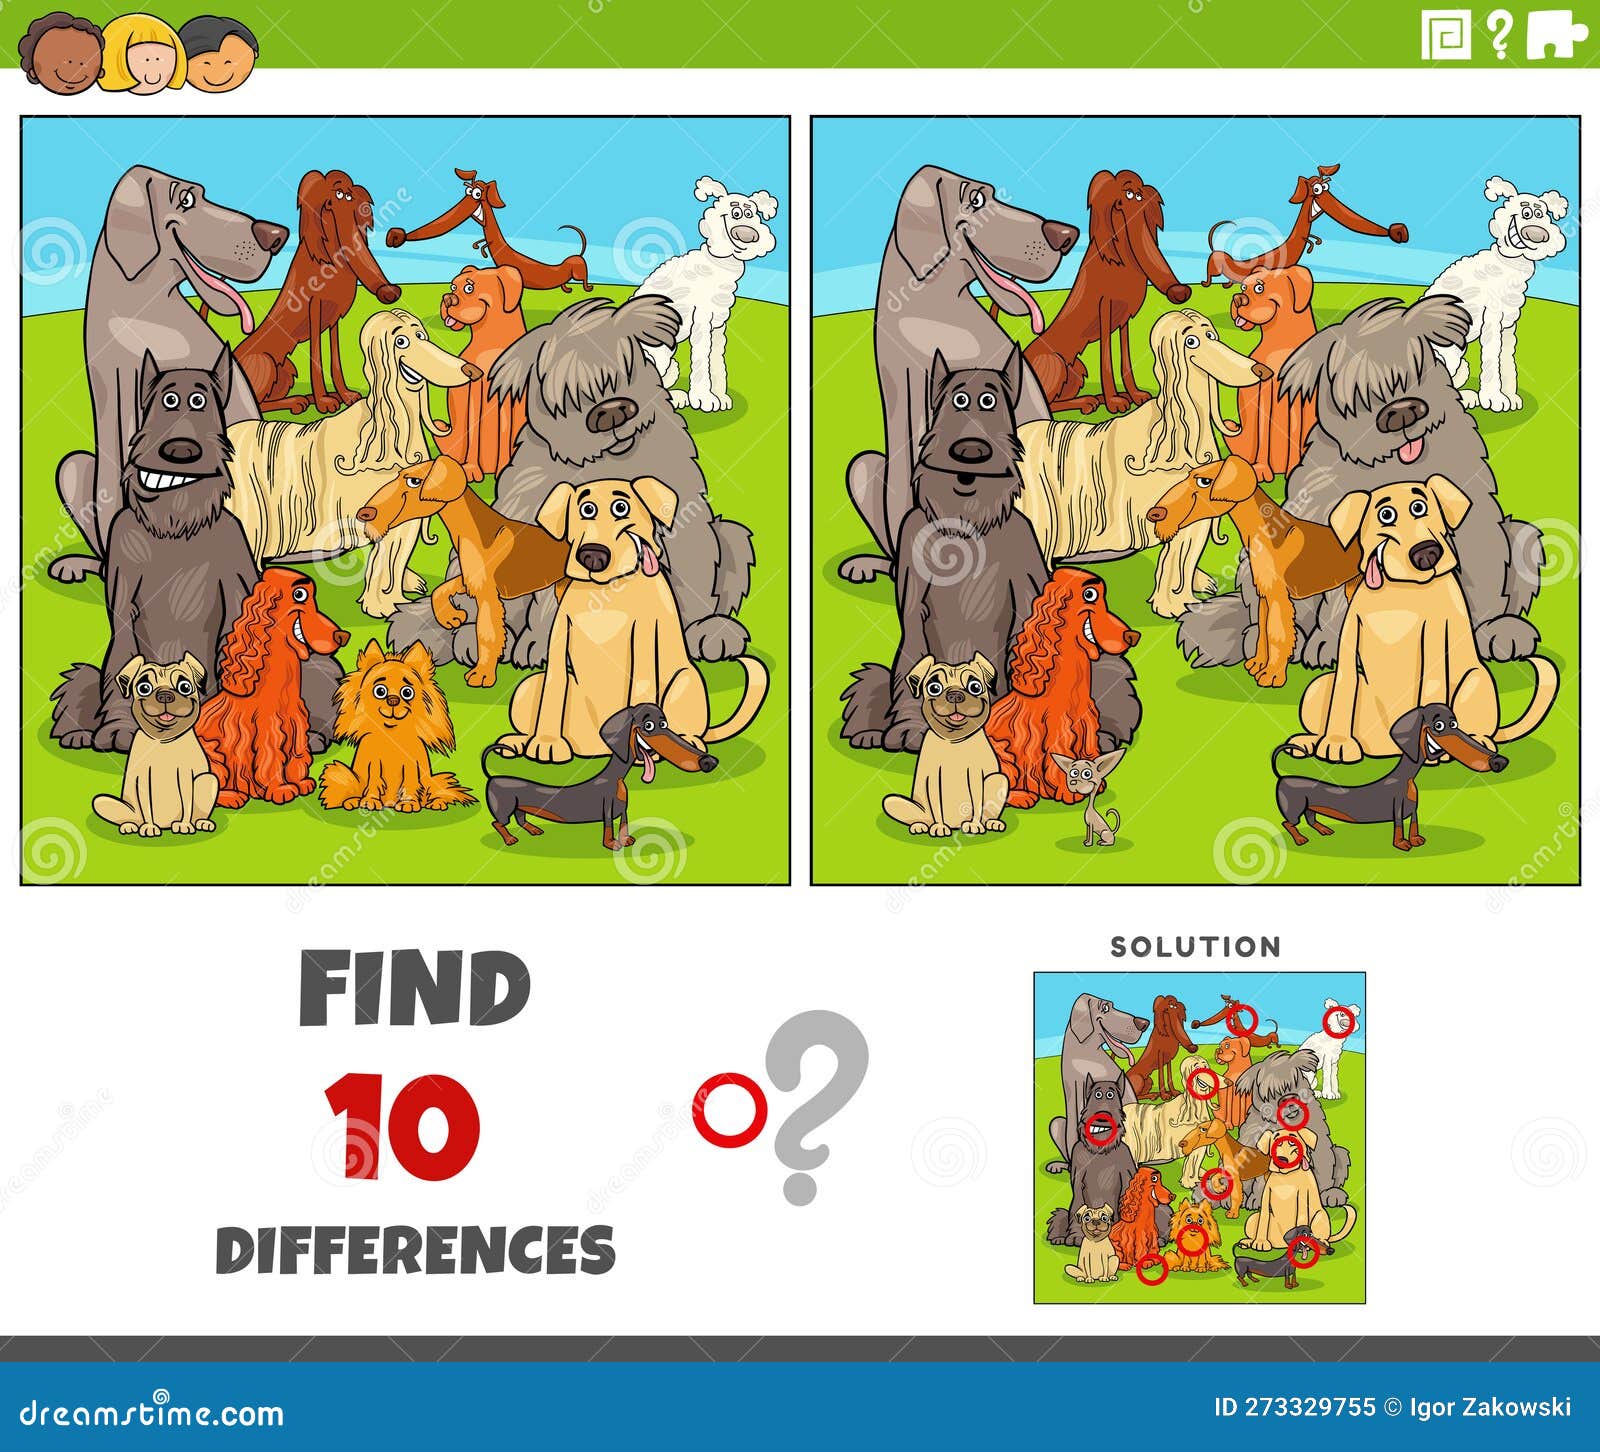 Desenho animado de encontrar as diferenças entre imagens - jogo